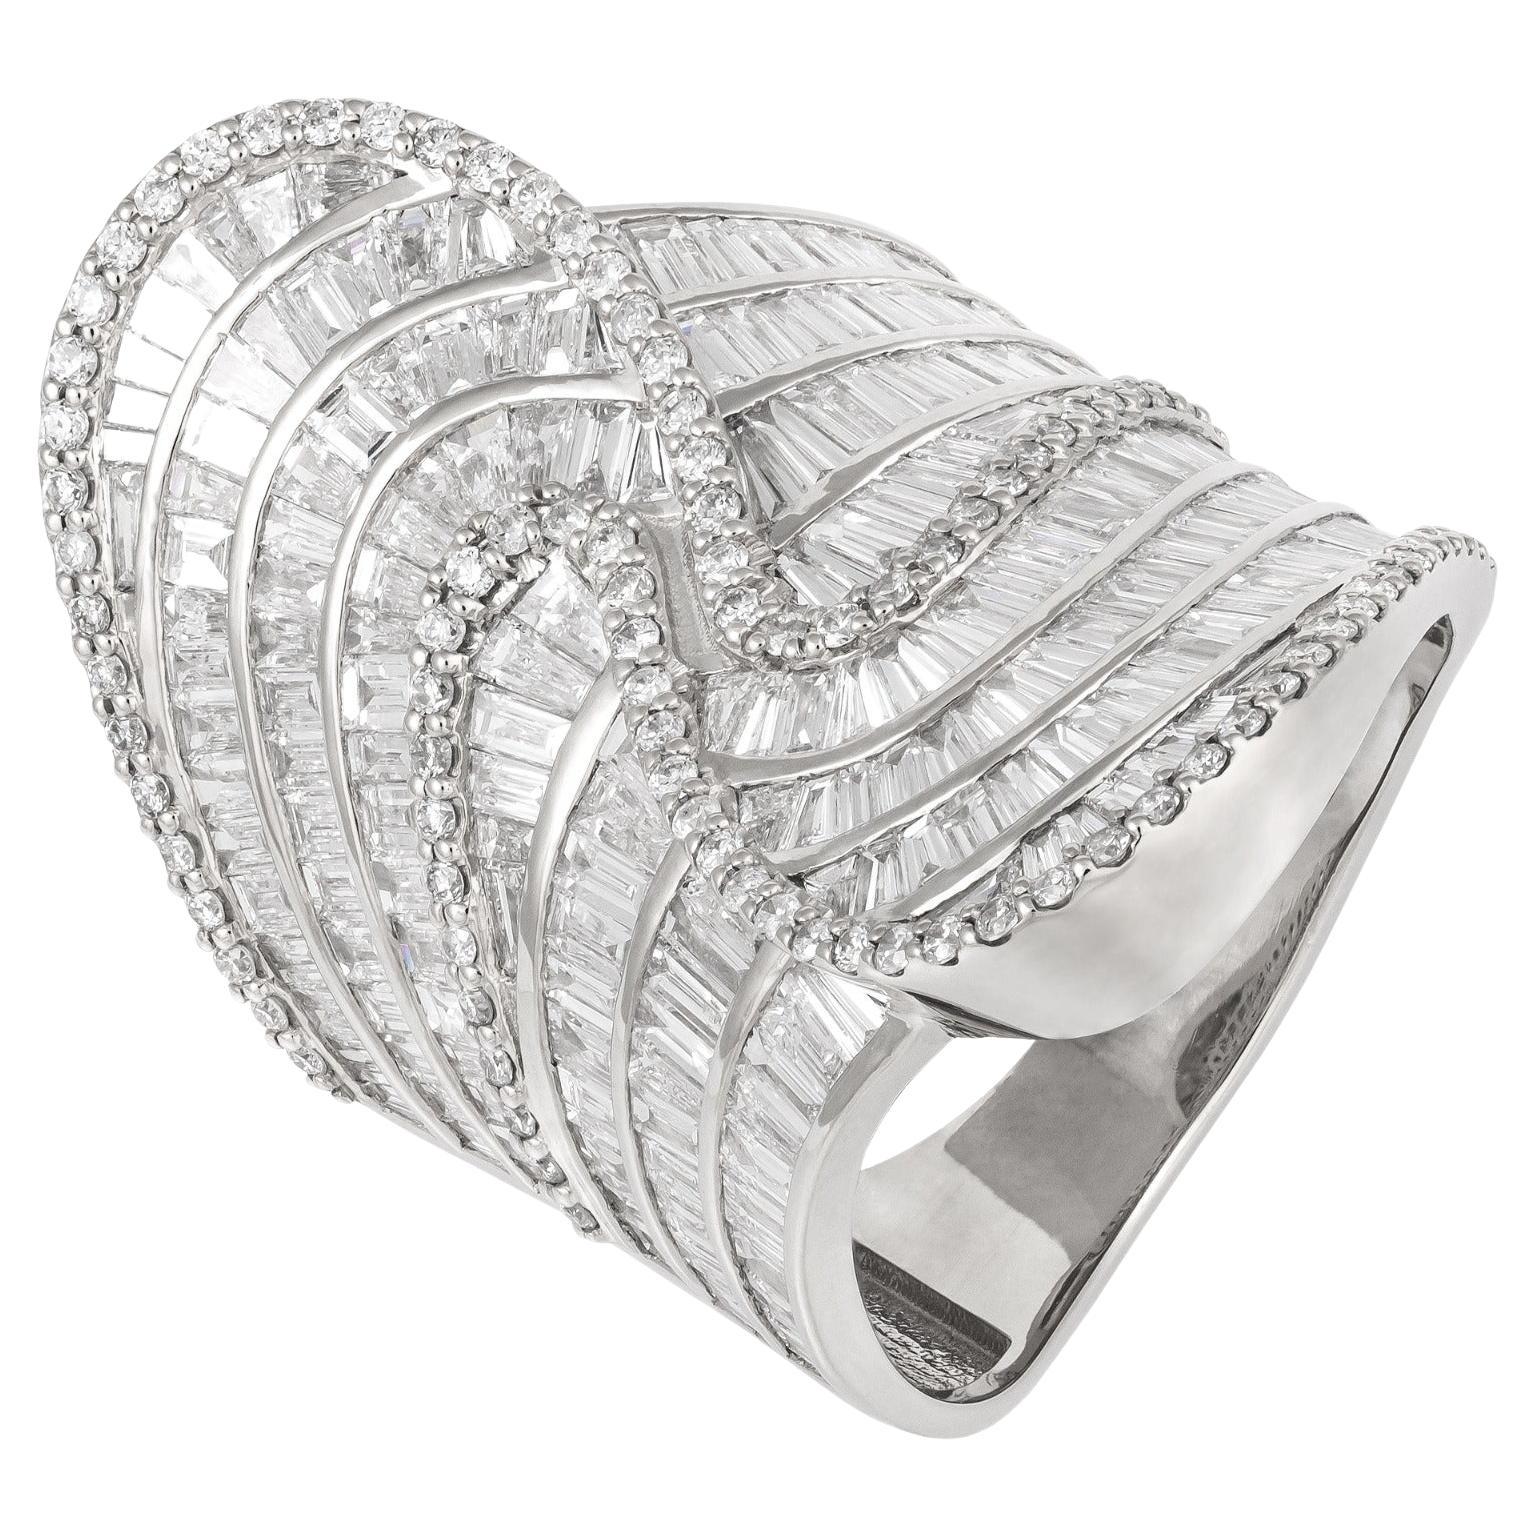 For Sale:  Stunning White 18K Gold White Diamond Ring for Her